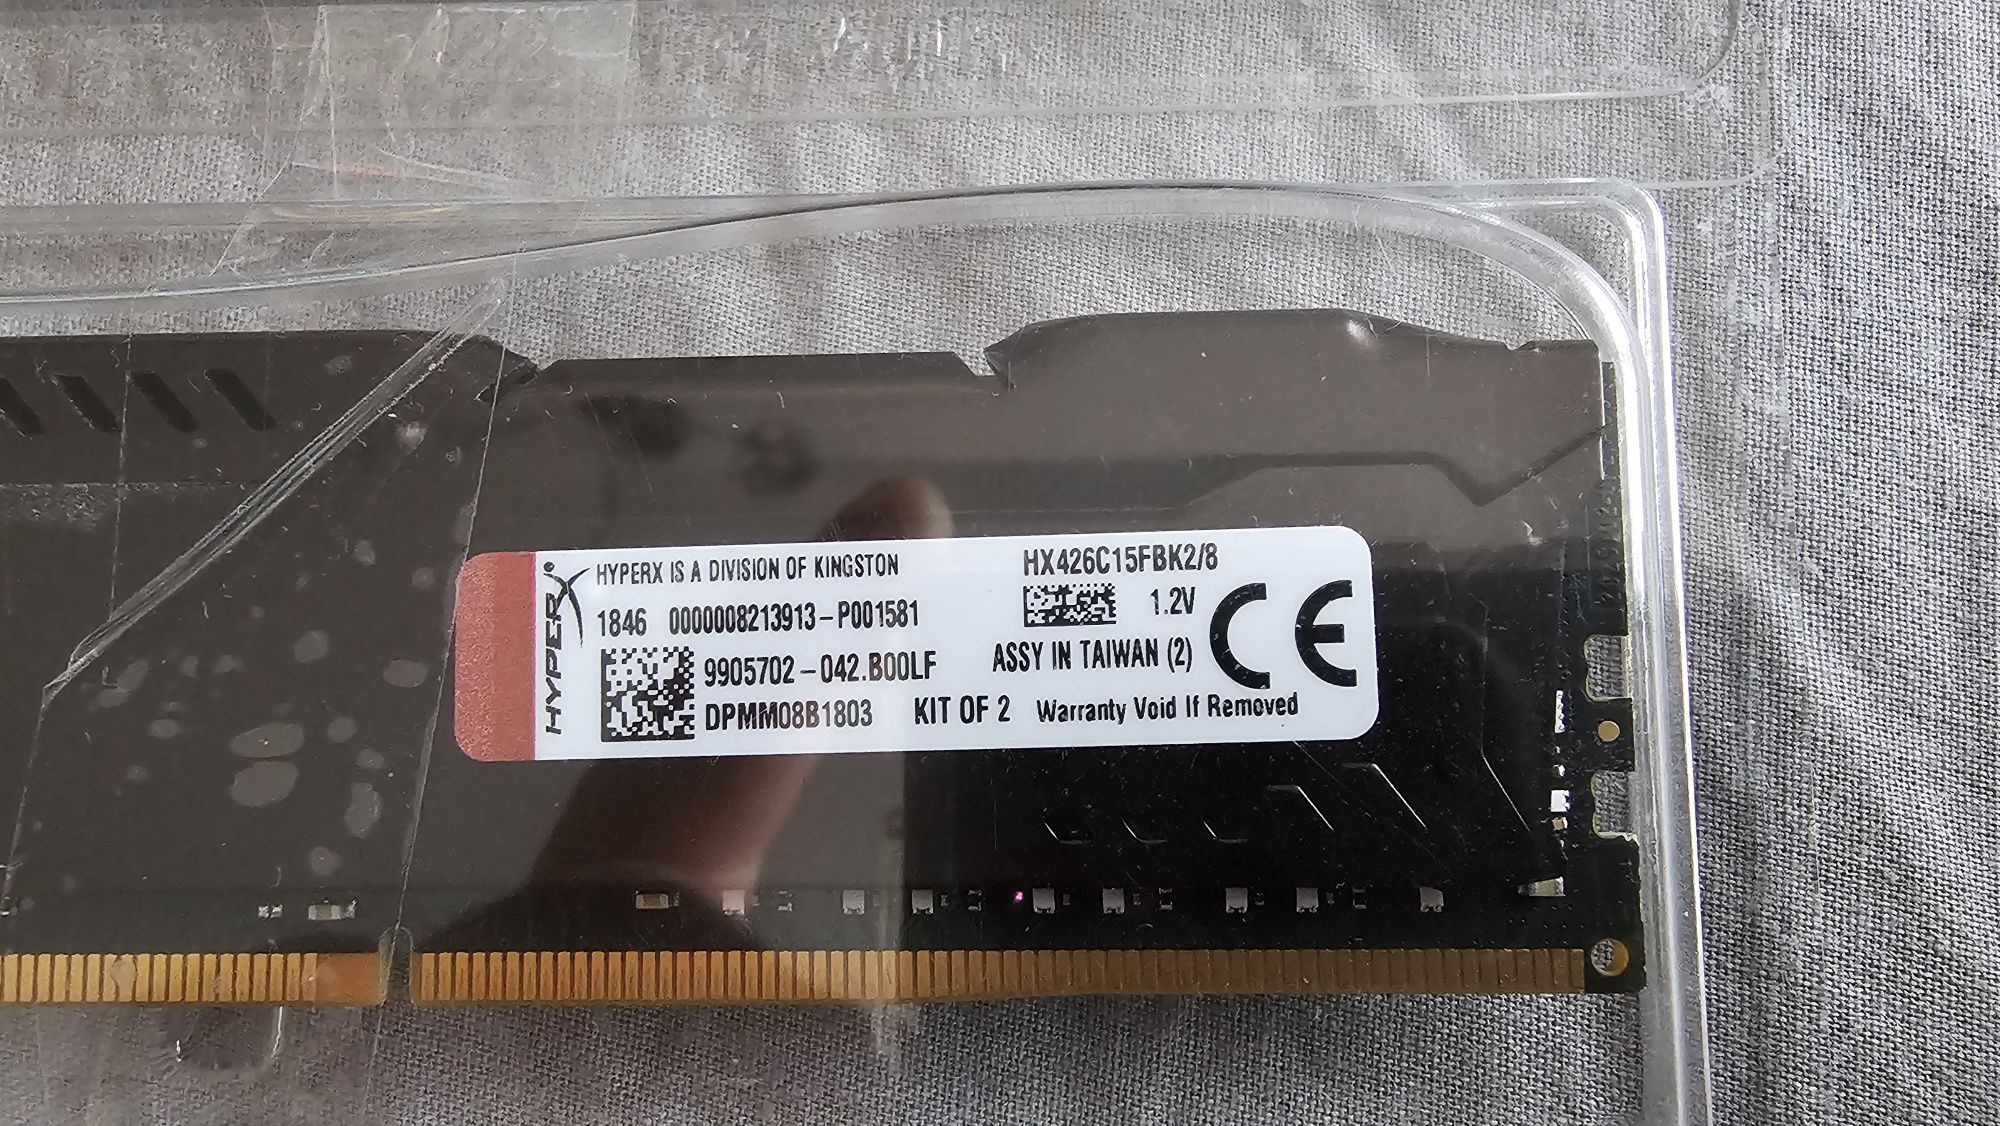 Memorii Kingstone HyperX Fury 2 x 4GB DDR4